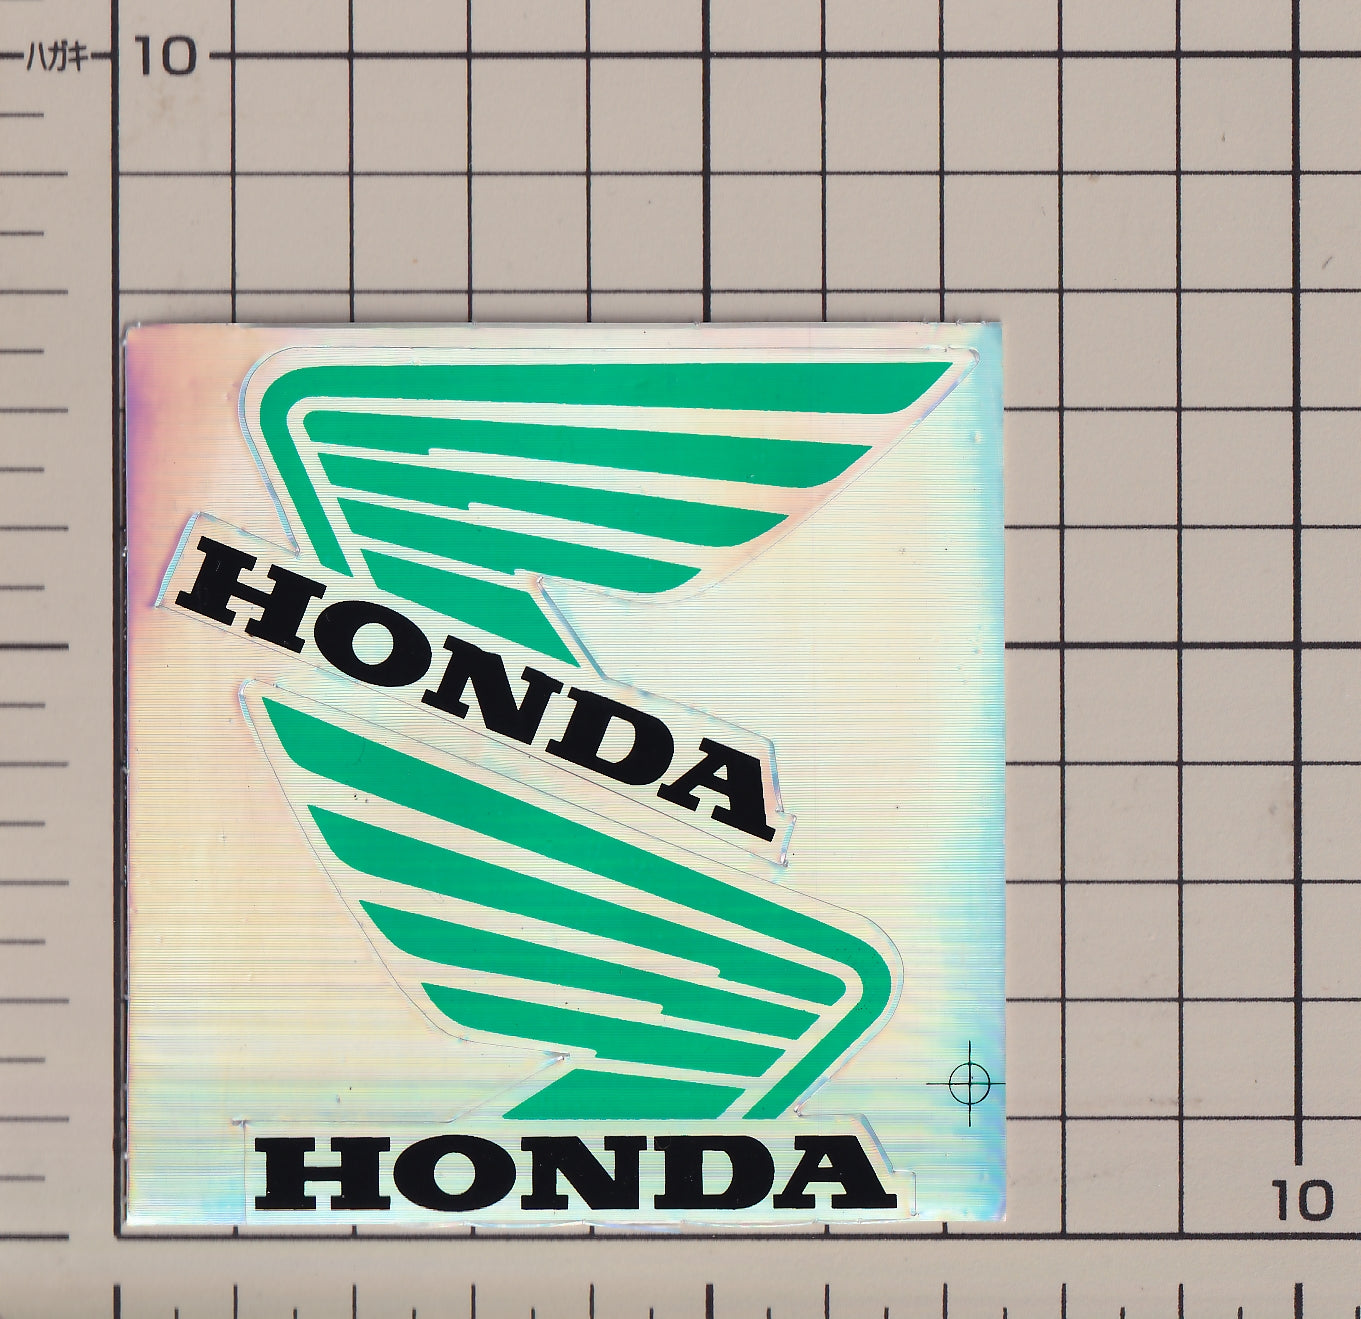 ホンダ ウィング 対称形 ホログラム ステッカー【残りわずか】HONDA sticker hologram mirror image wing